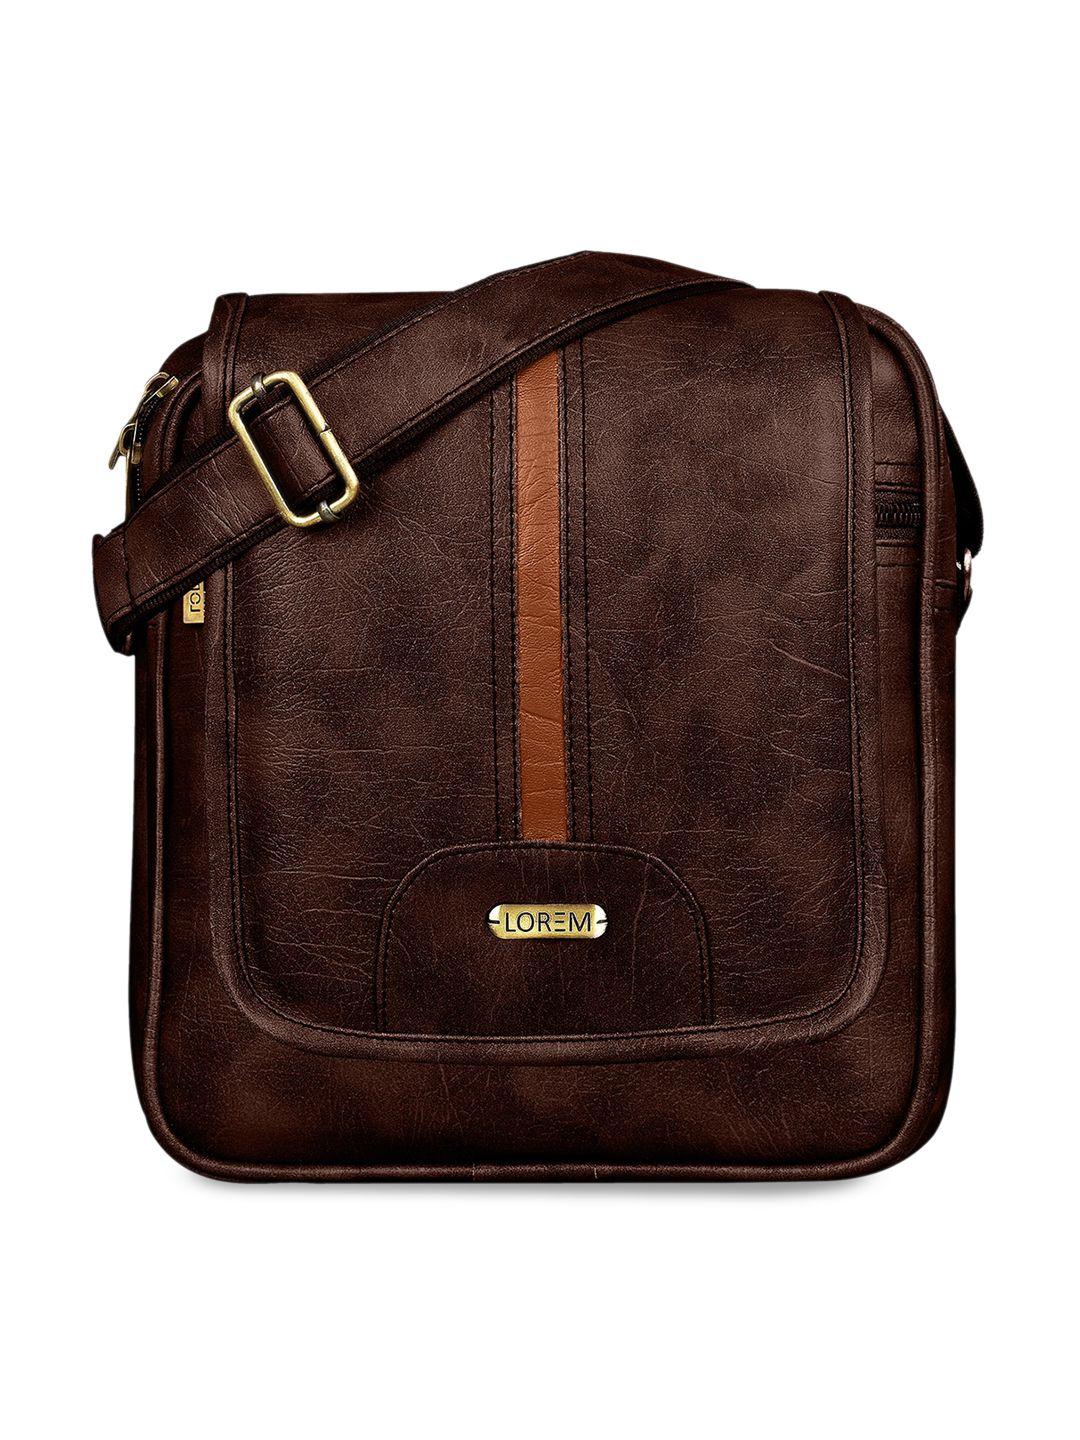 lorem-maroon-structured-sling-bag